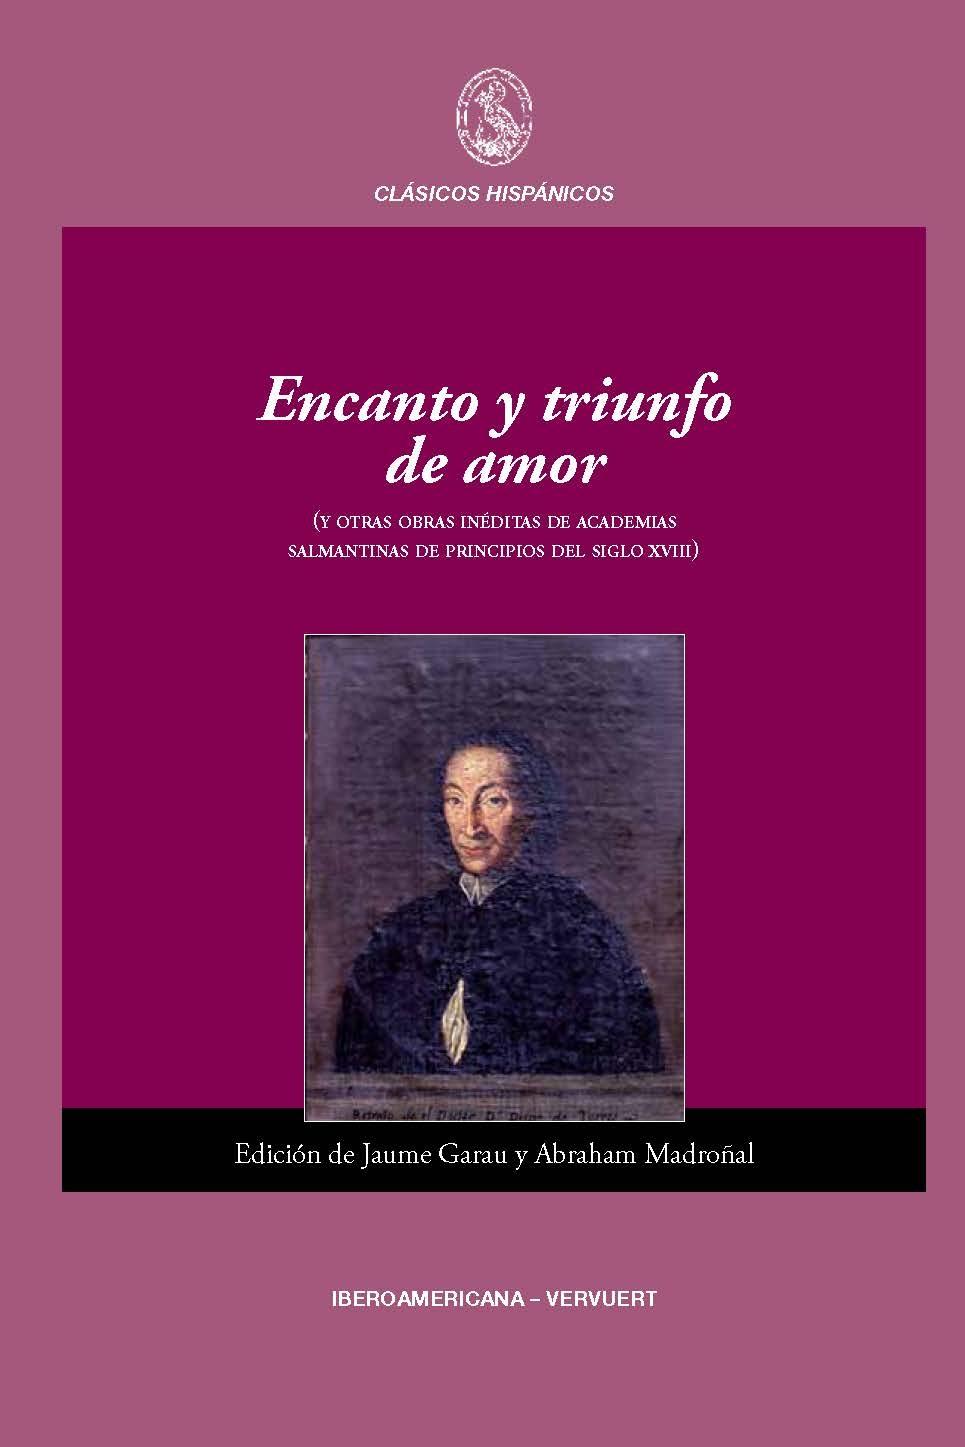 Encanto y triunfo de amor (y otras obras inéditas de academias salmantinas de principios de siglo XVIII). 